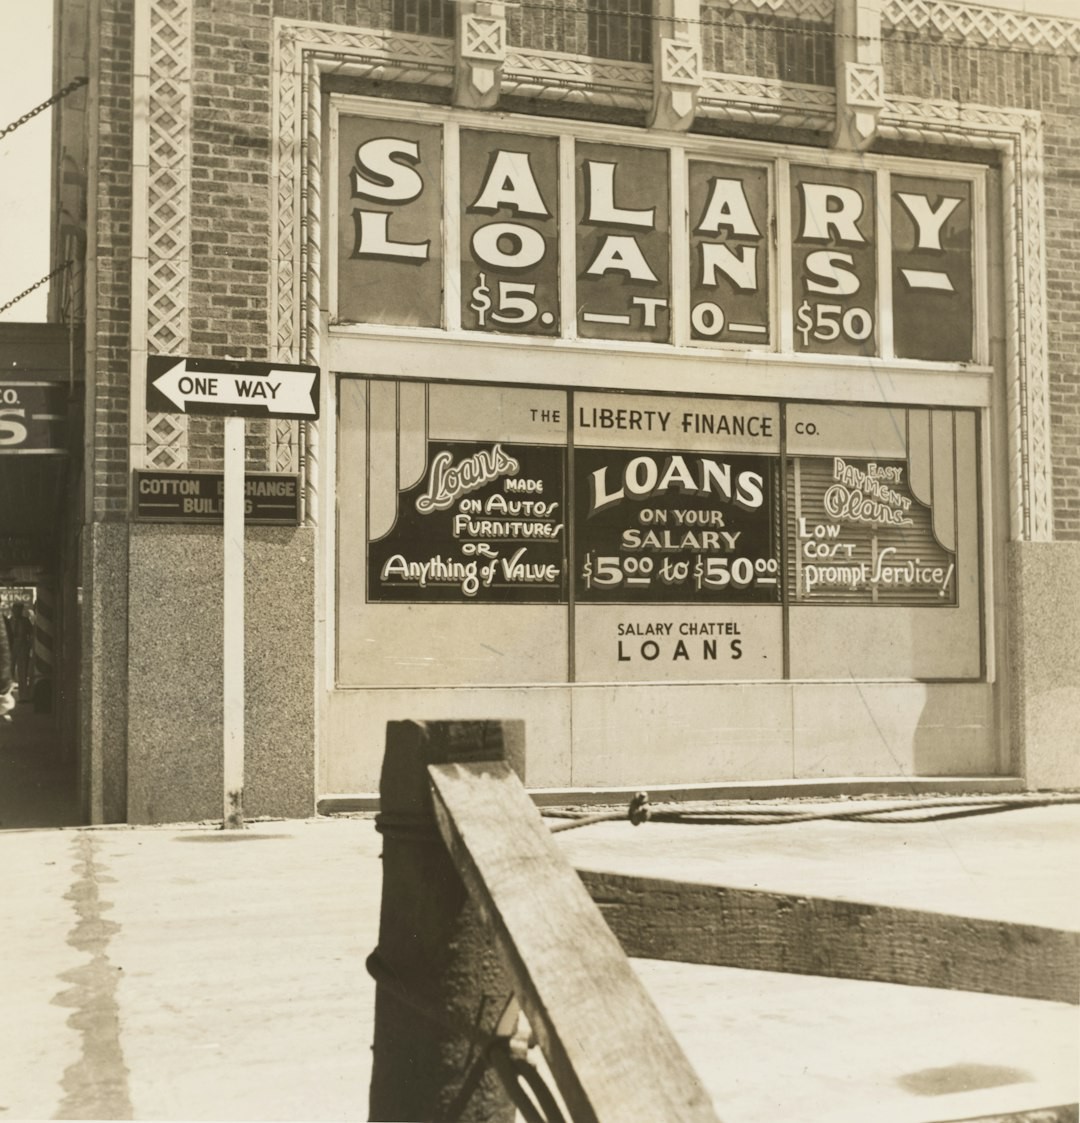 1937.
Liberty Finance Company. Oklahoma City, Oklahoma.
Photographer: Dorothea Lange